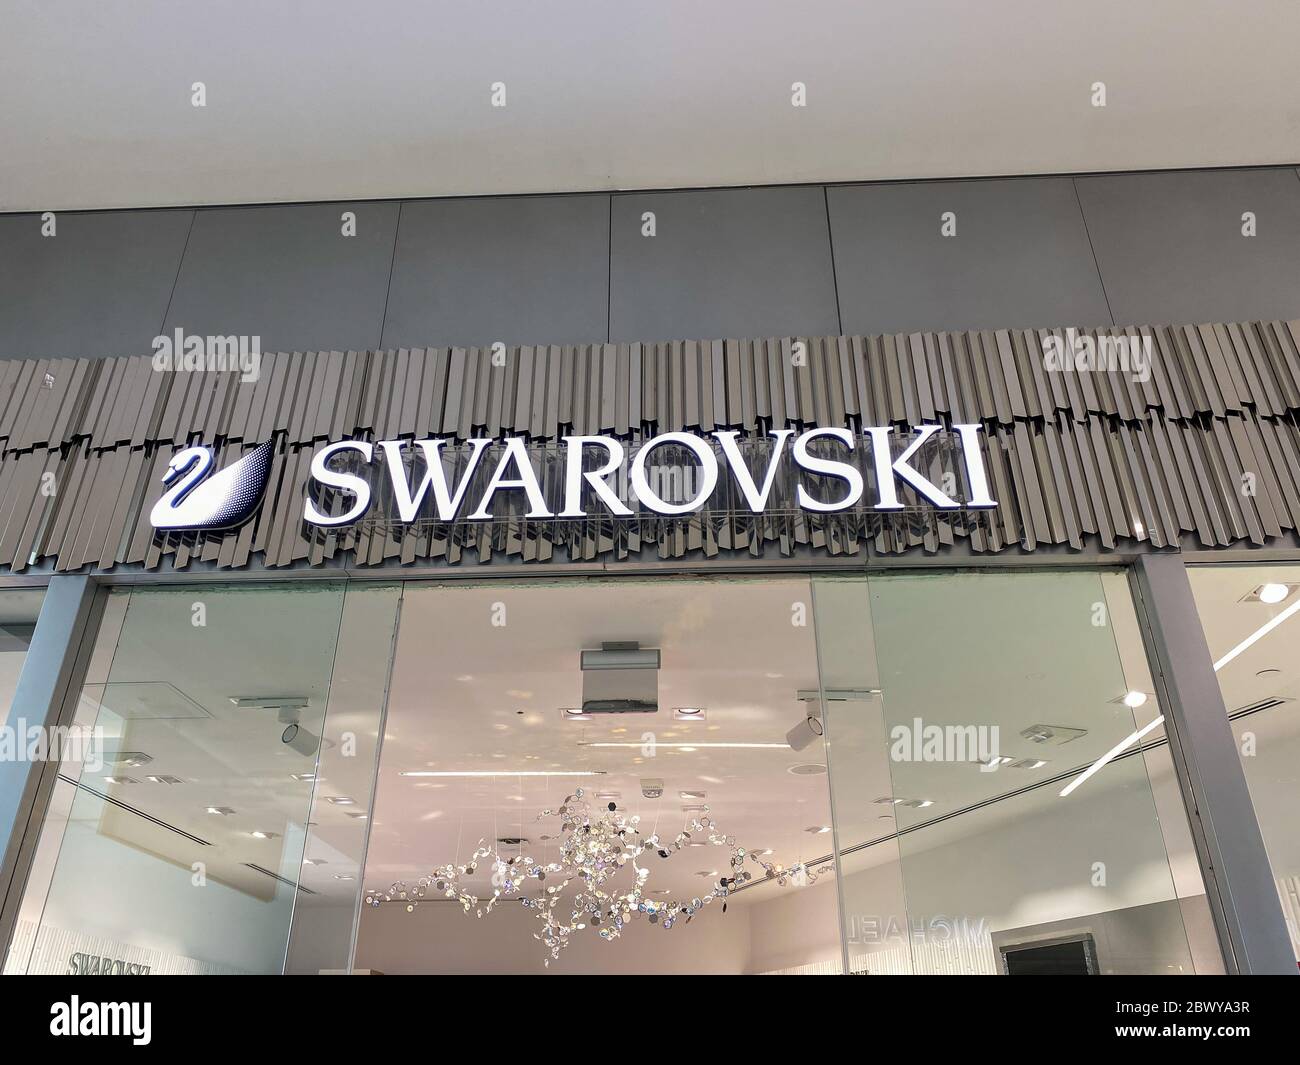 Orlando,FL/USA-2/17/20: La tienda de joyas Swarovski en el centro comercial  de la milenia en Orlando, Florida Fotografía de stock - Alamy